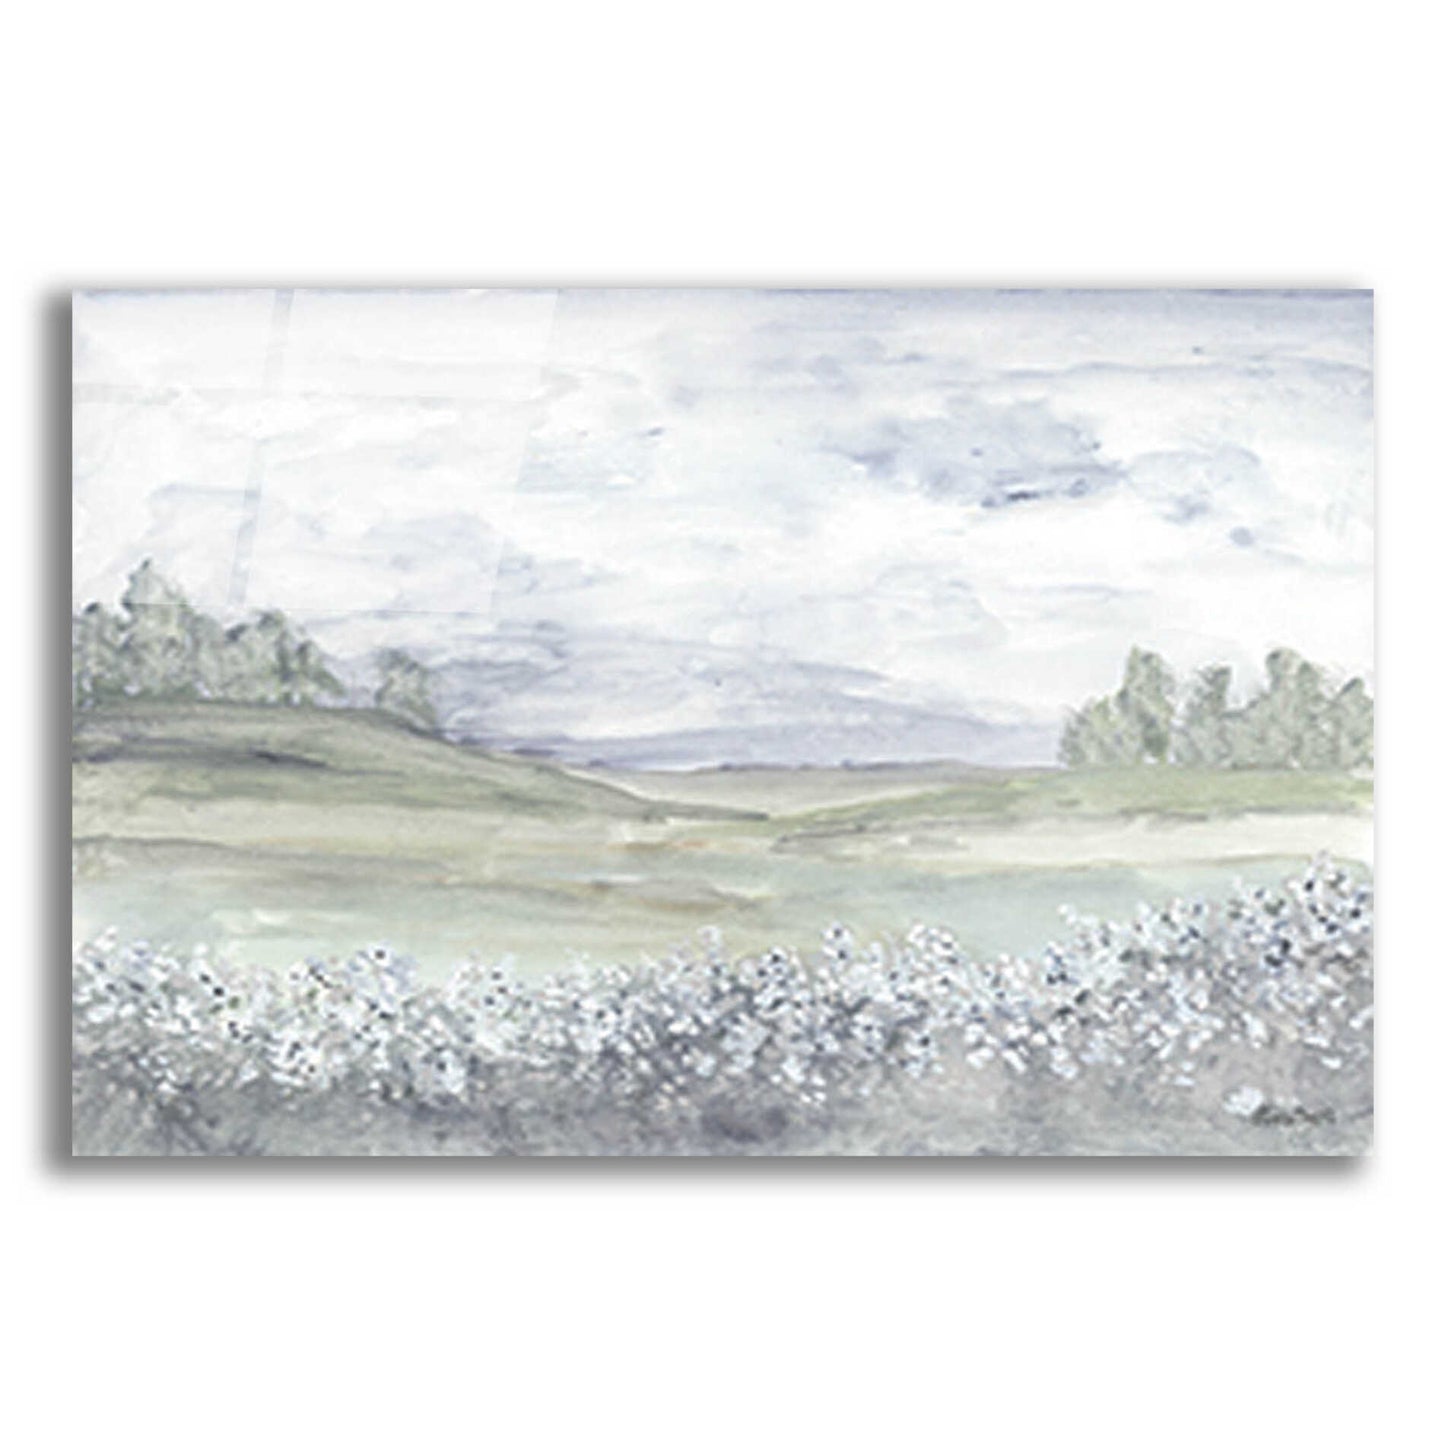 Epic Art 'Meadow' by Roey Ebert, Acrylic Glass Wall Art,24x16